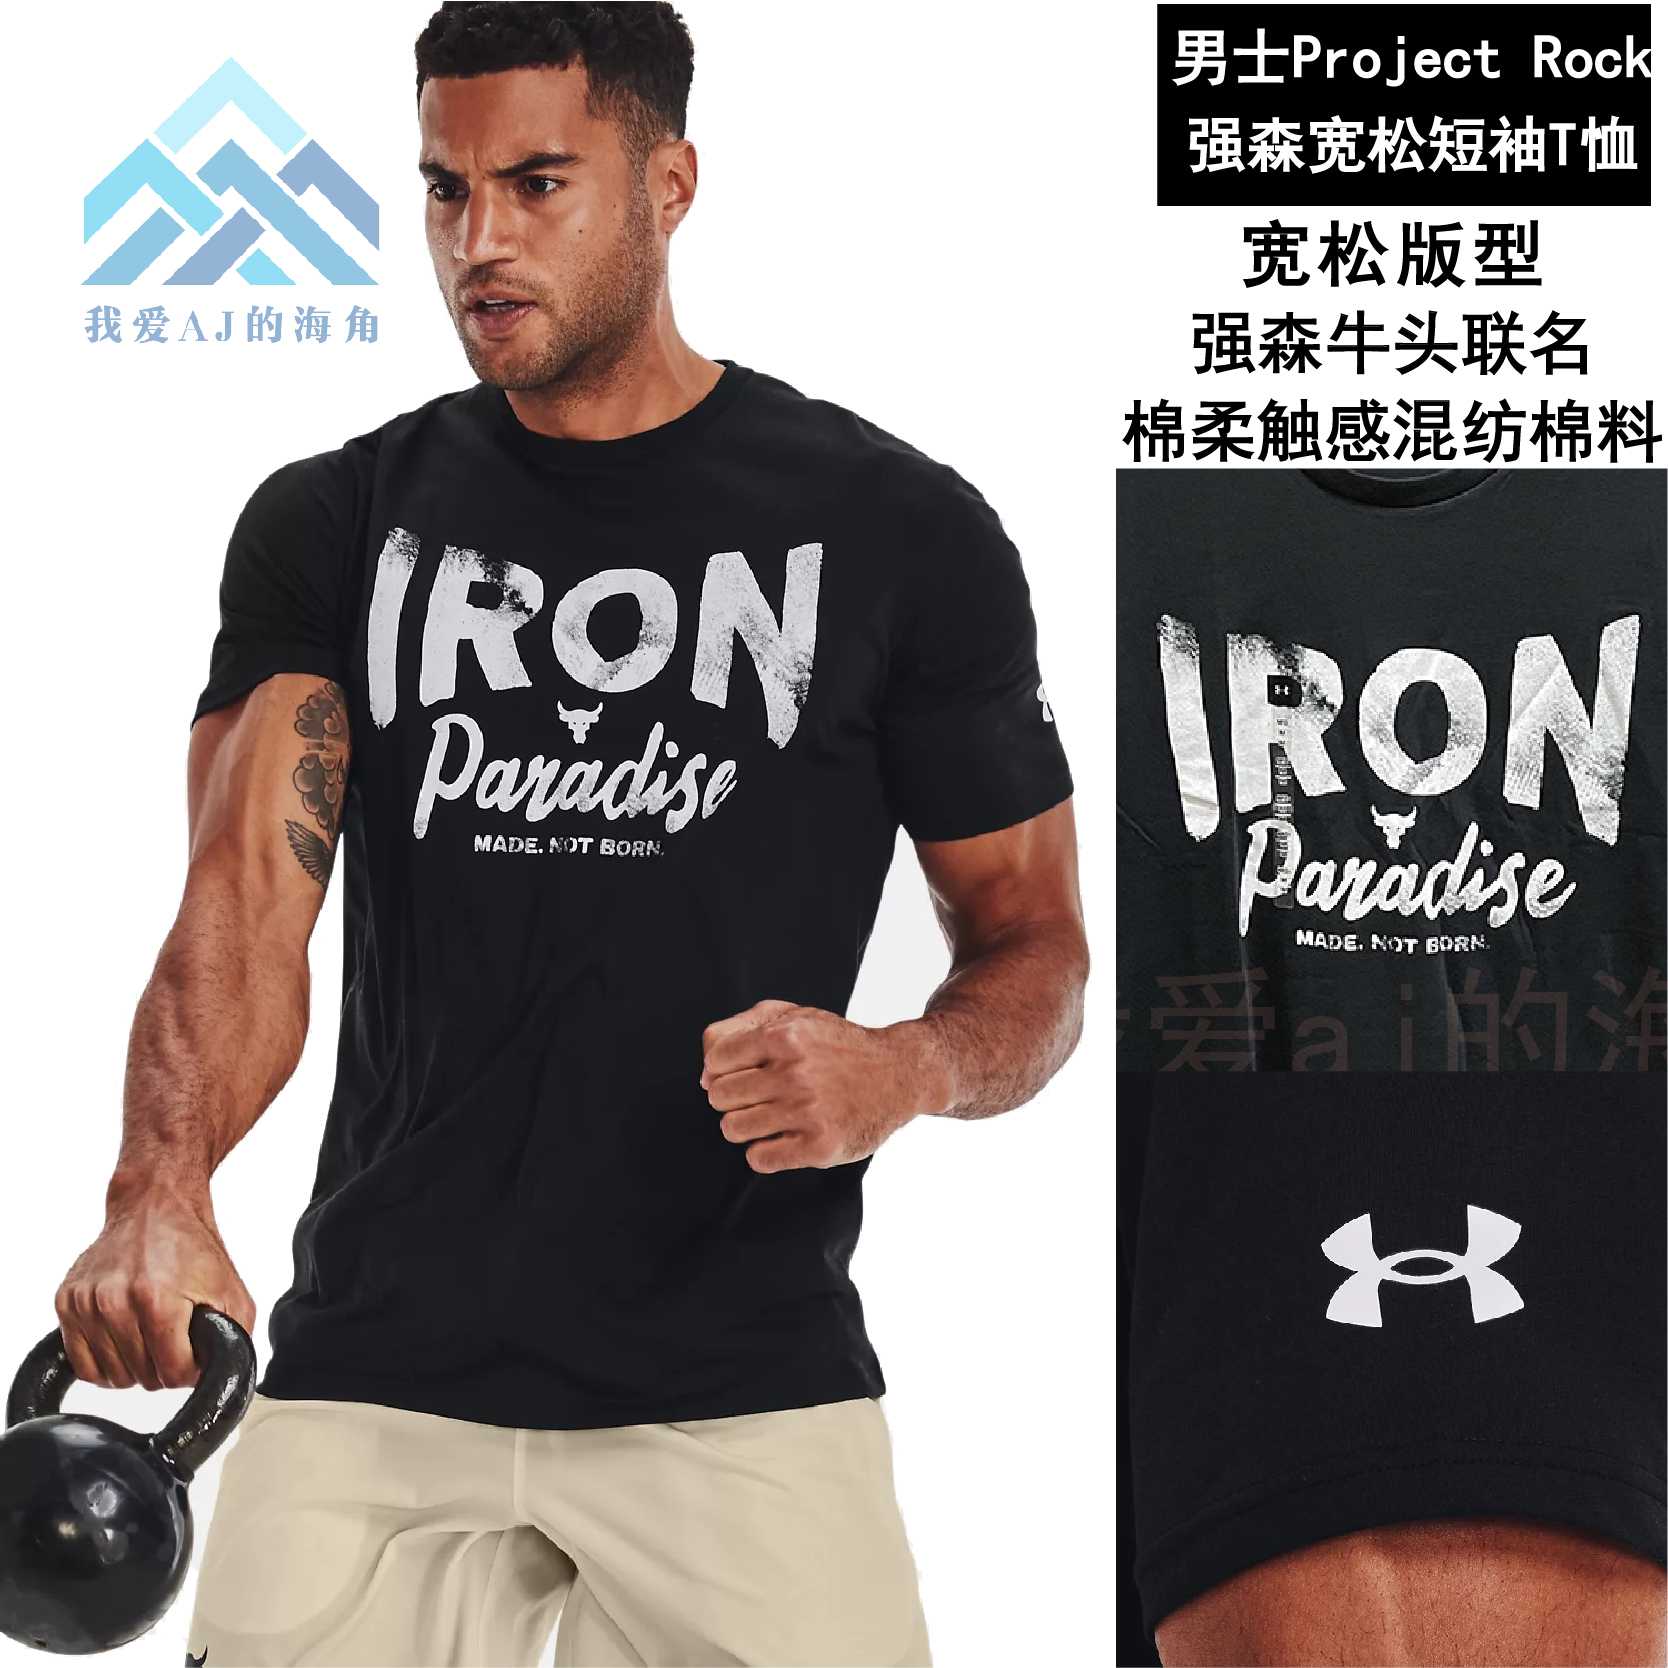 安德玛UA Project Rock 强森运动训练健身圆领宽松短袖T恤1370483